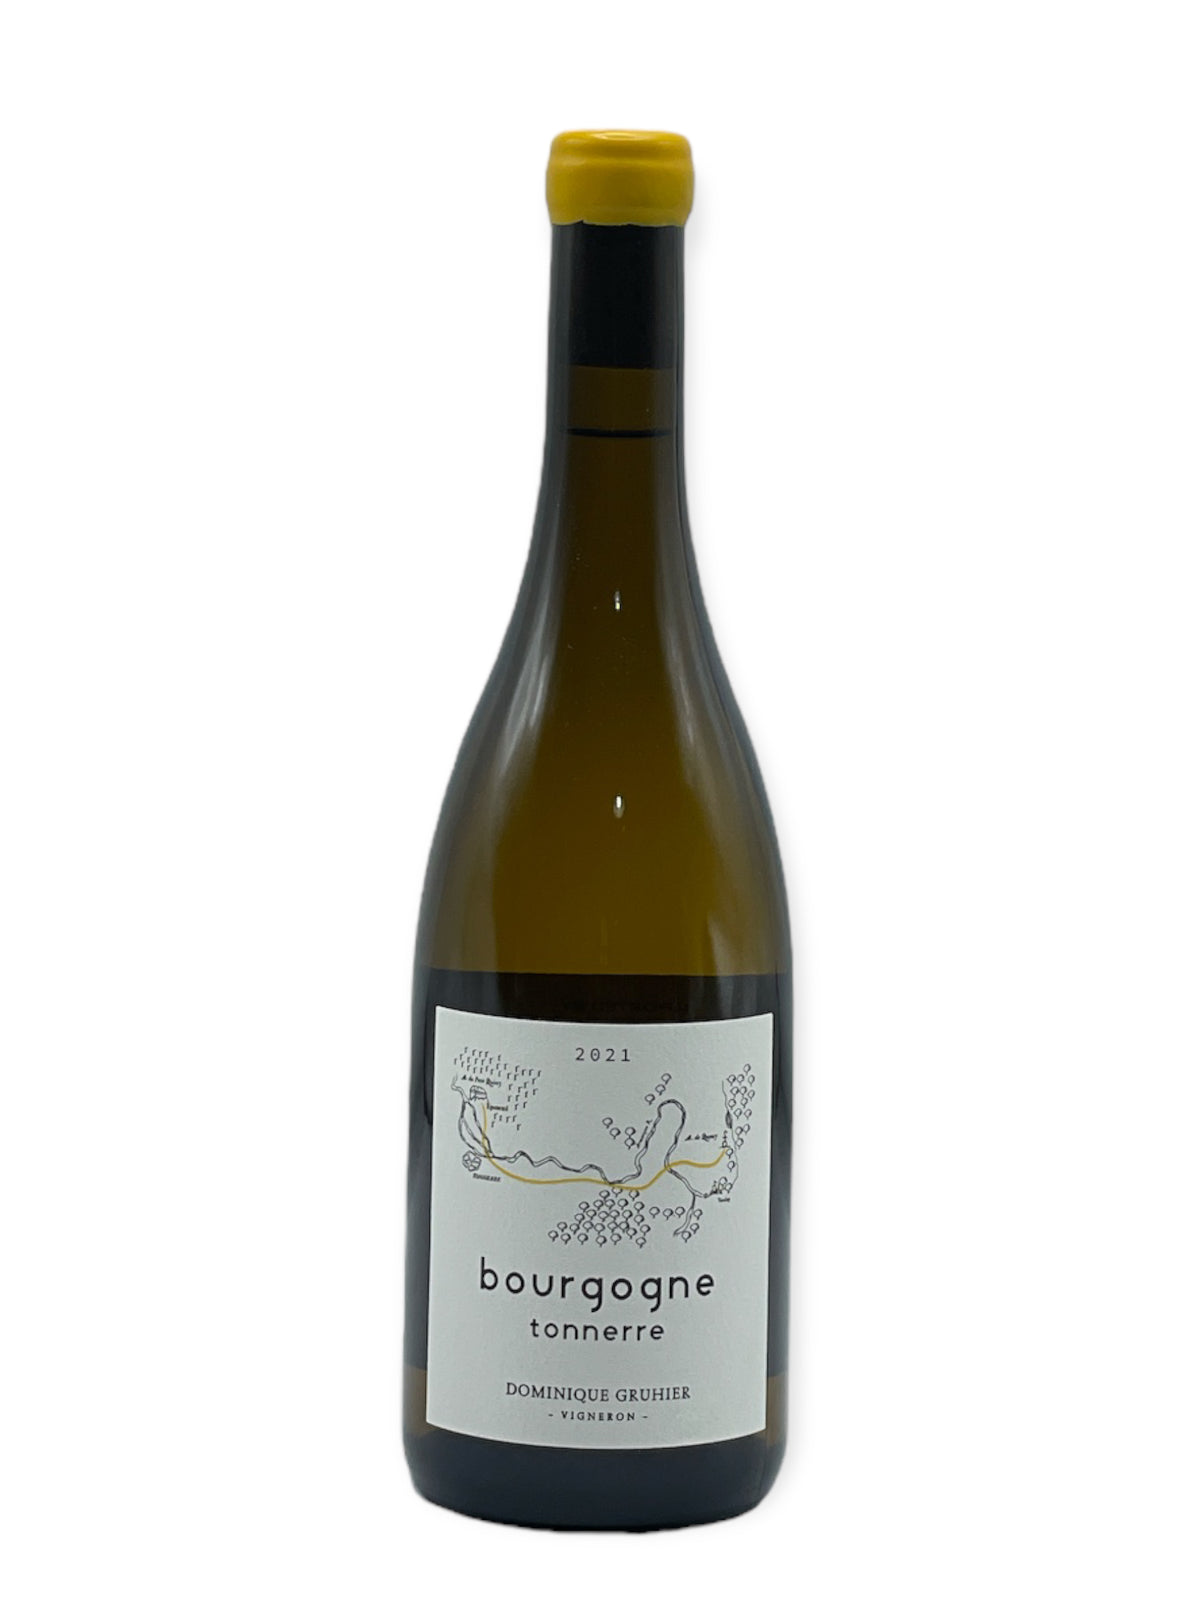 Dominique Gruhier - Bourgogne Tonnerre Blanc 2021